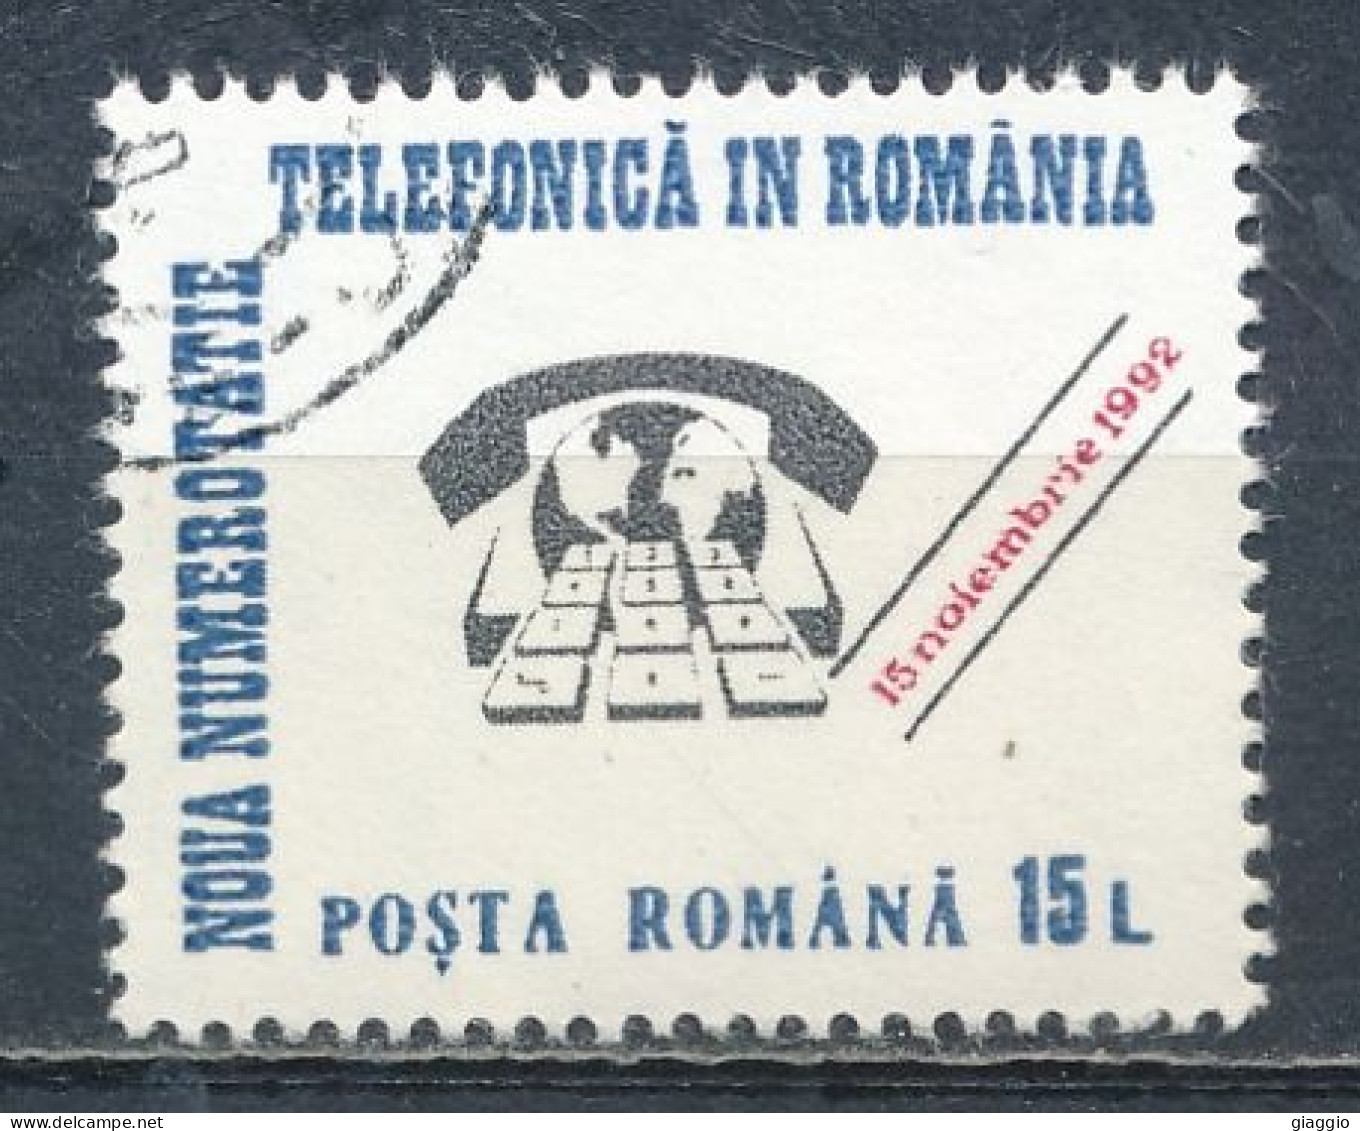 °°° ROMANIA - Y&T N° 4045 - 1992 °°° - Oblitérés